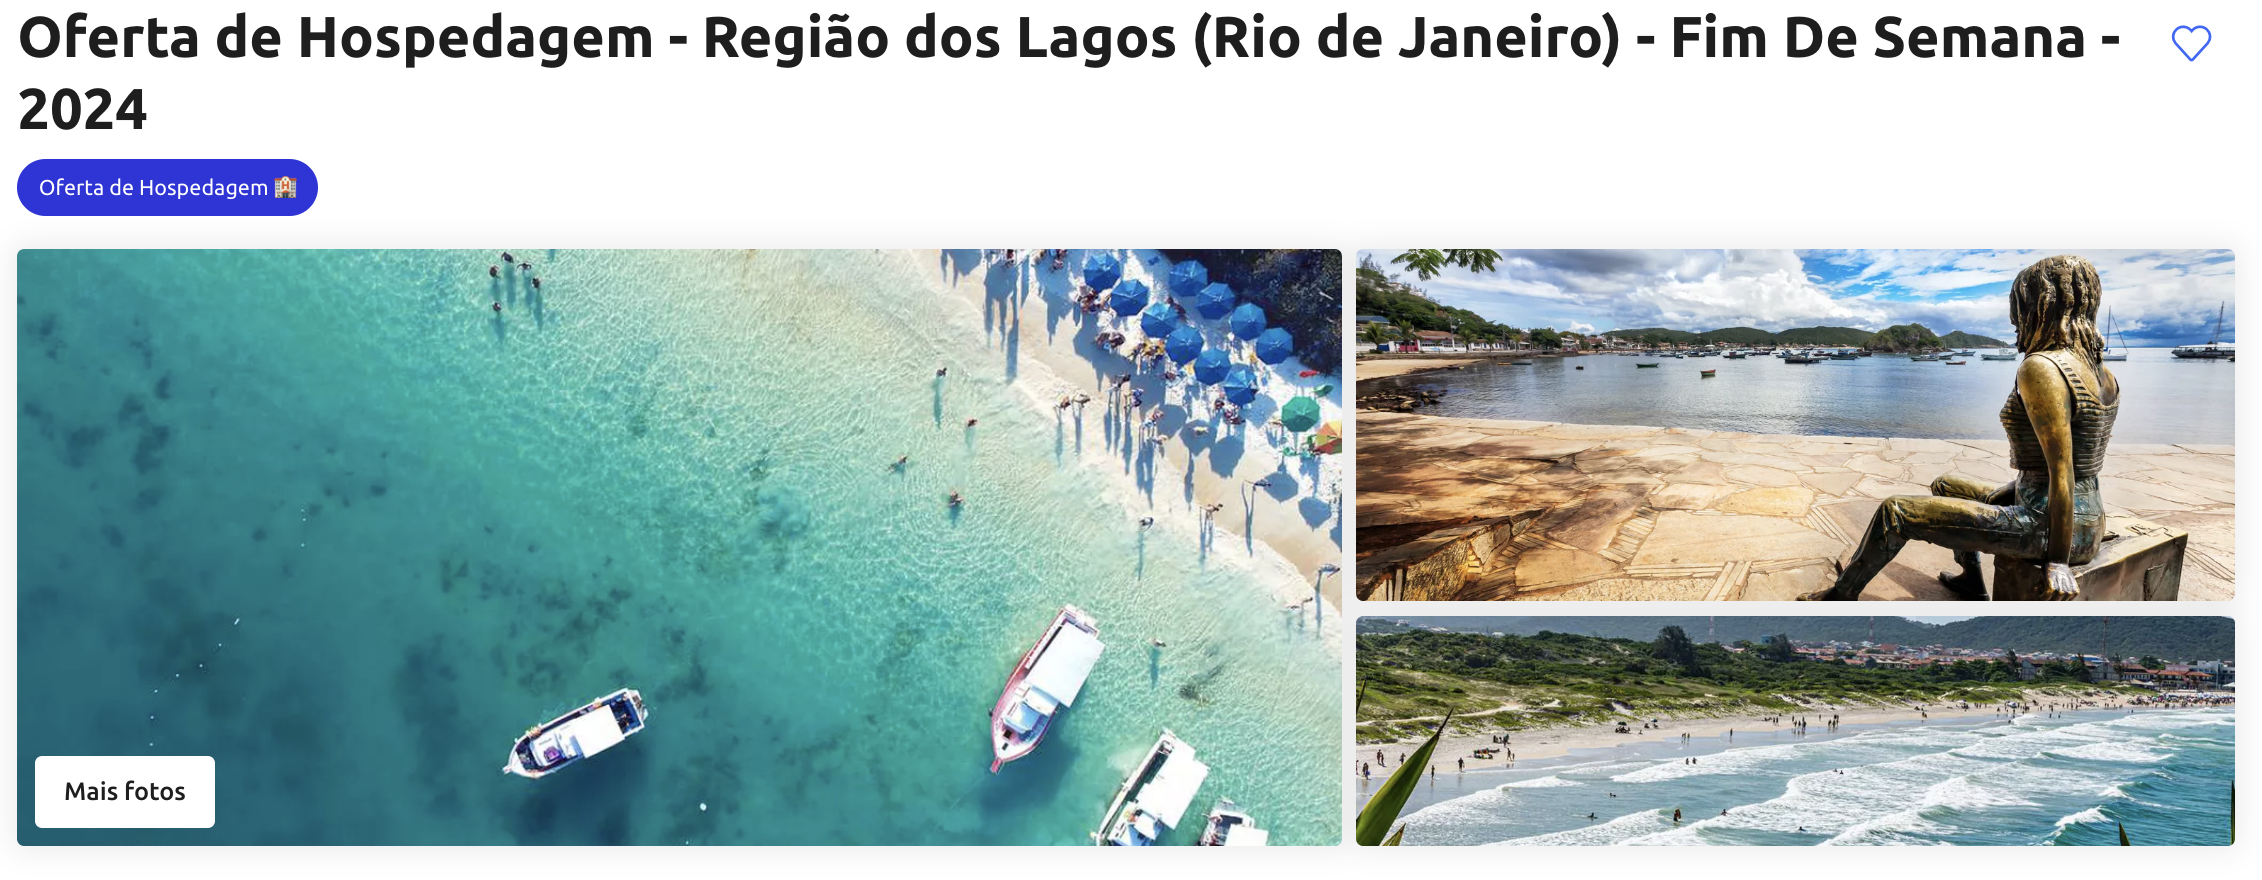 Oferta de Hospedagem - Região dos Lagos (Rio de Janeiro) - Fim De Semana - 2024